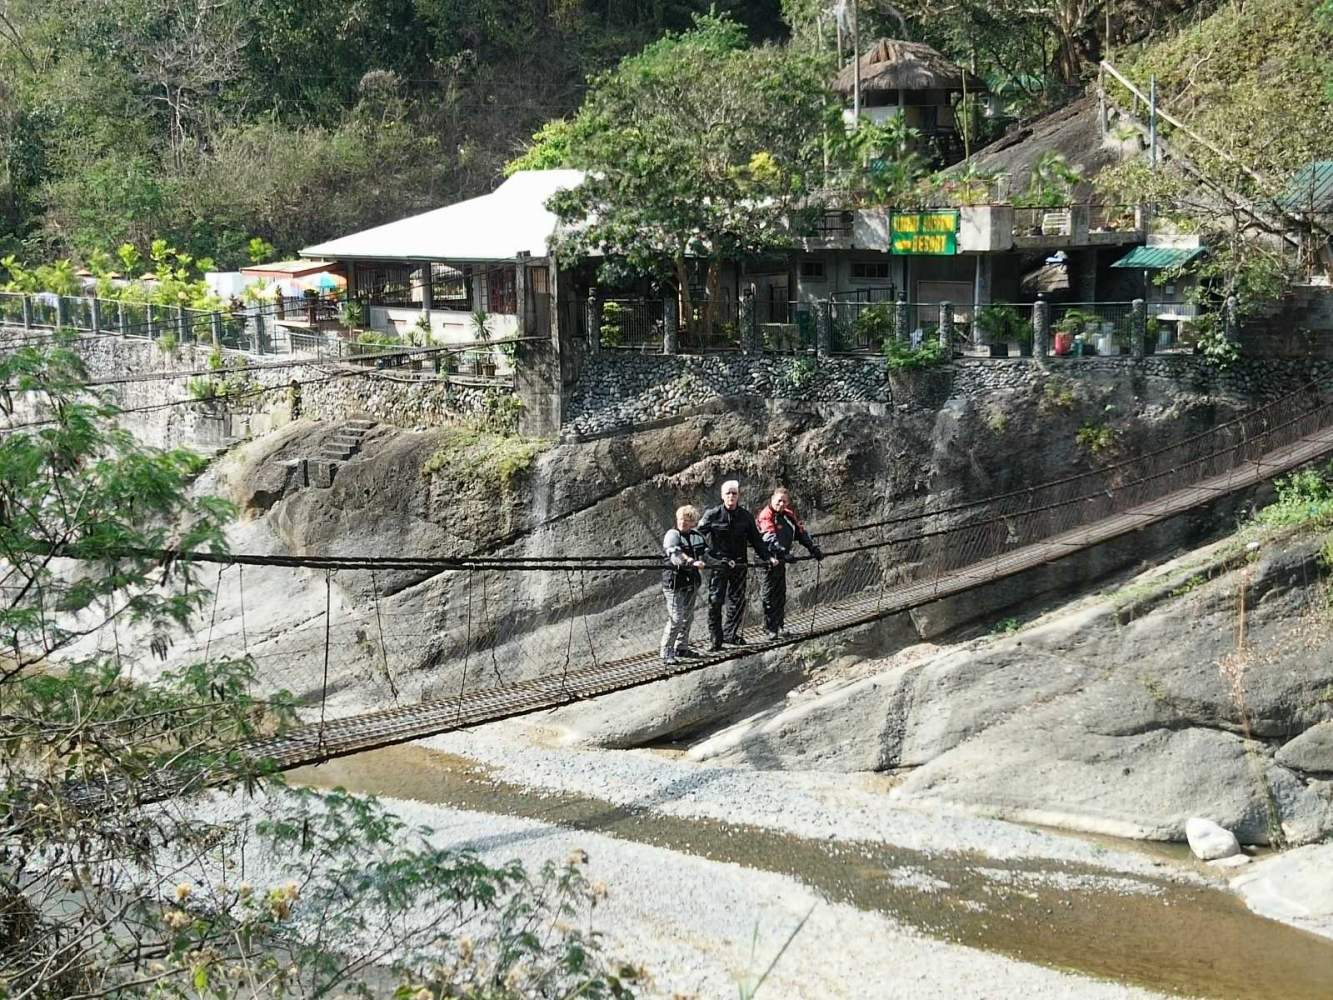 Auf dem Weg nach Baguio haben wir die Möglichkeit in einem Restaurant zu essen, das nur über eine schmale Hängebrücke zu Fuß erreichbar ist. Unter uns liegt das Flussbett und die wackelige Angelegenheit ist eher was für die mutigen Motorradfahrer/innen unter uns.